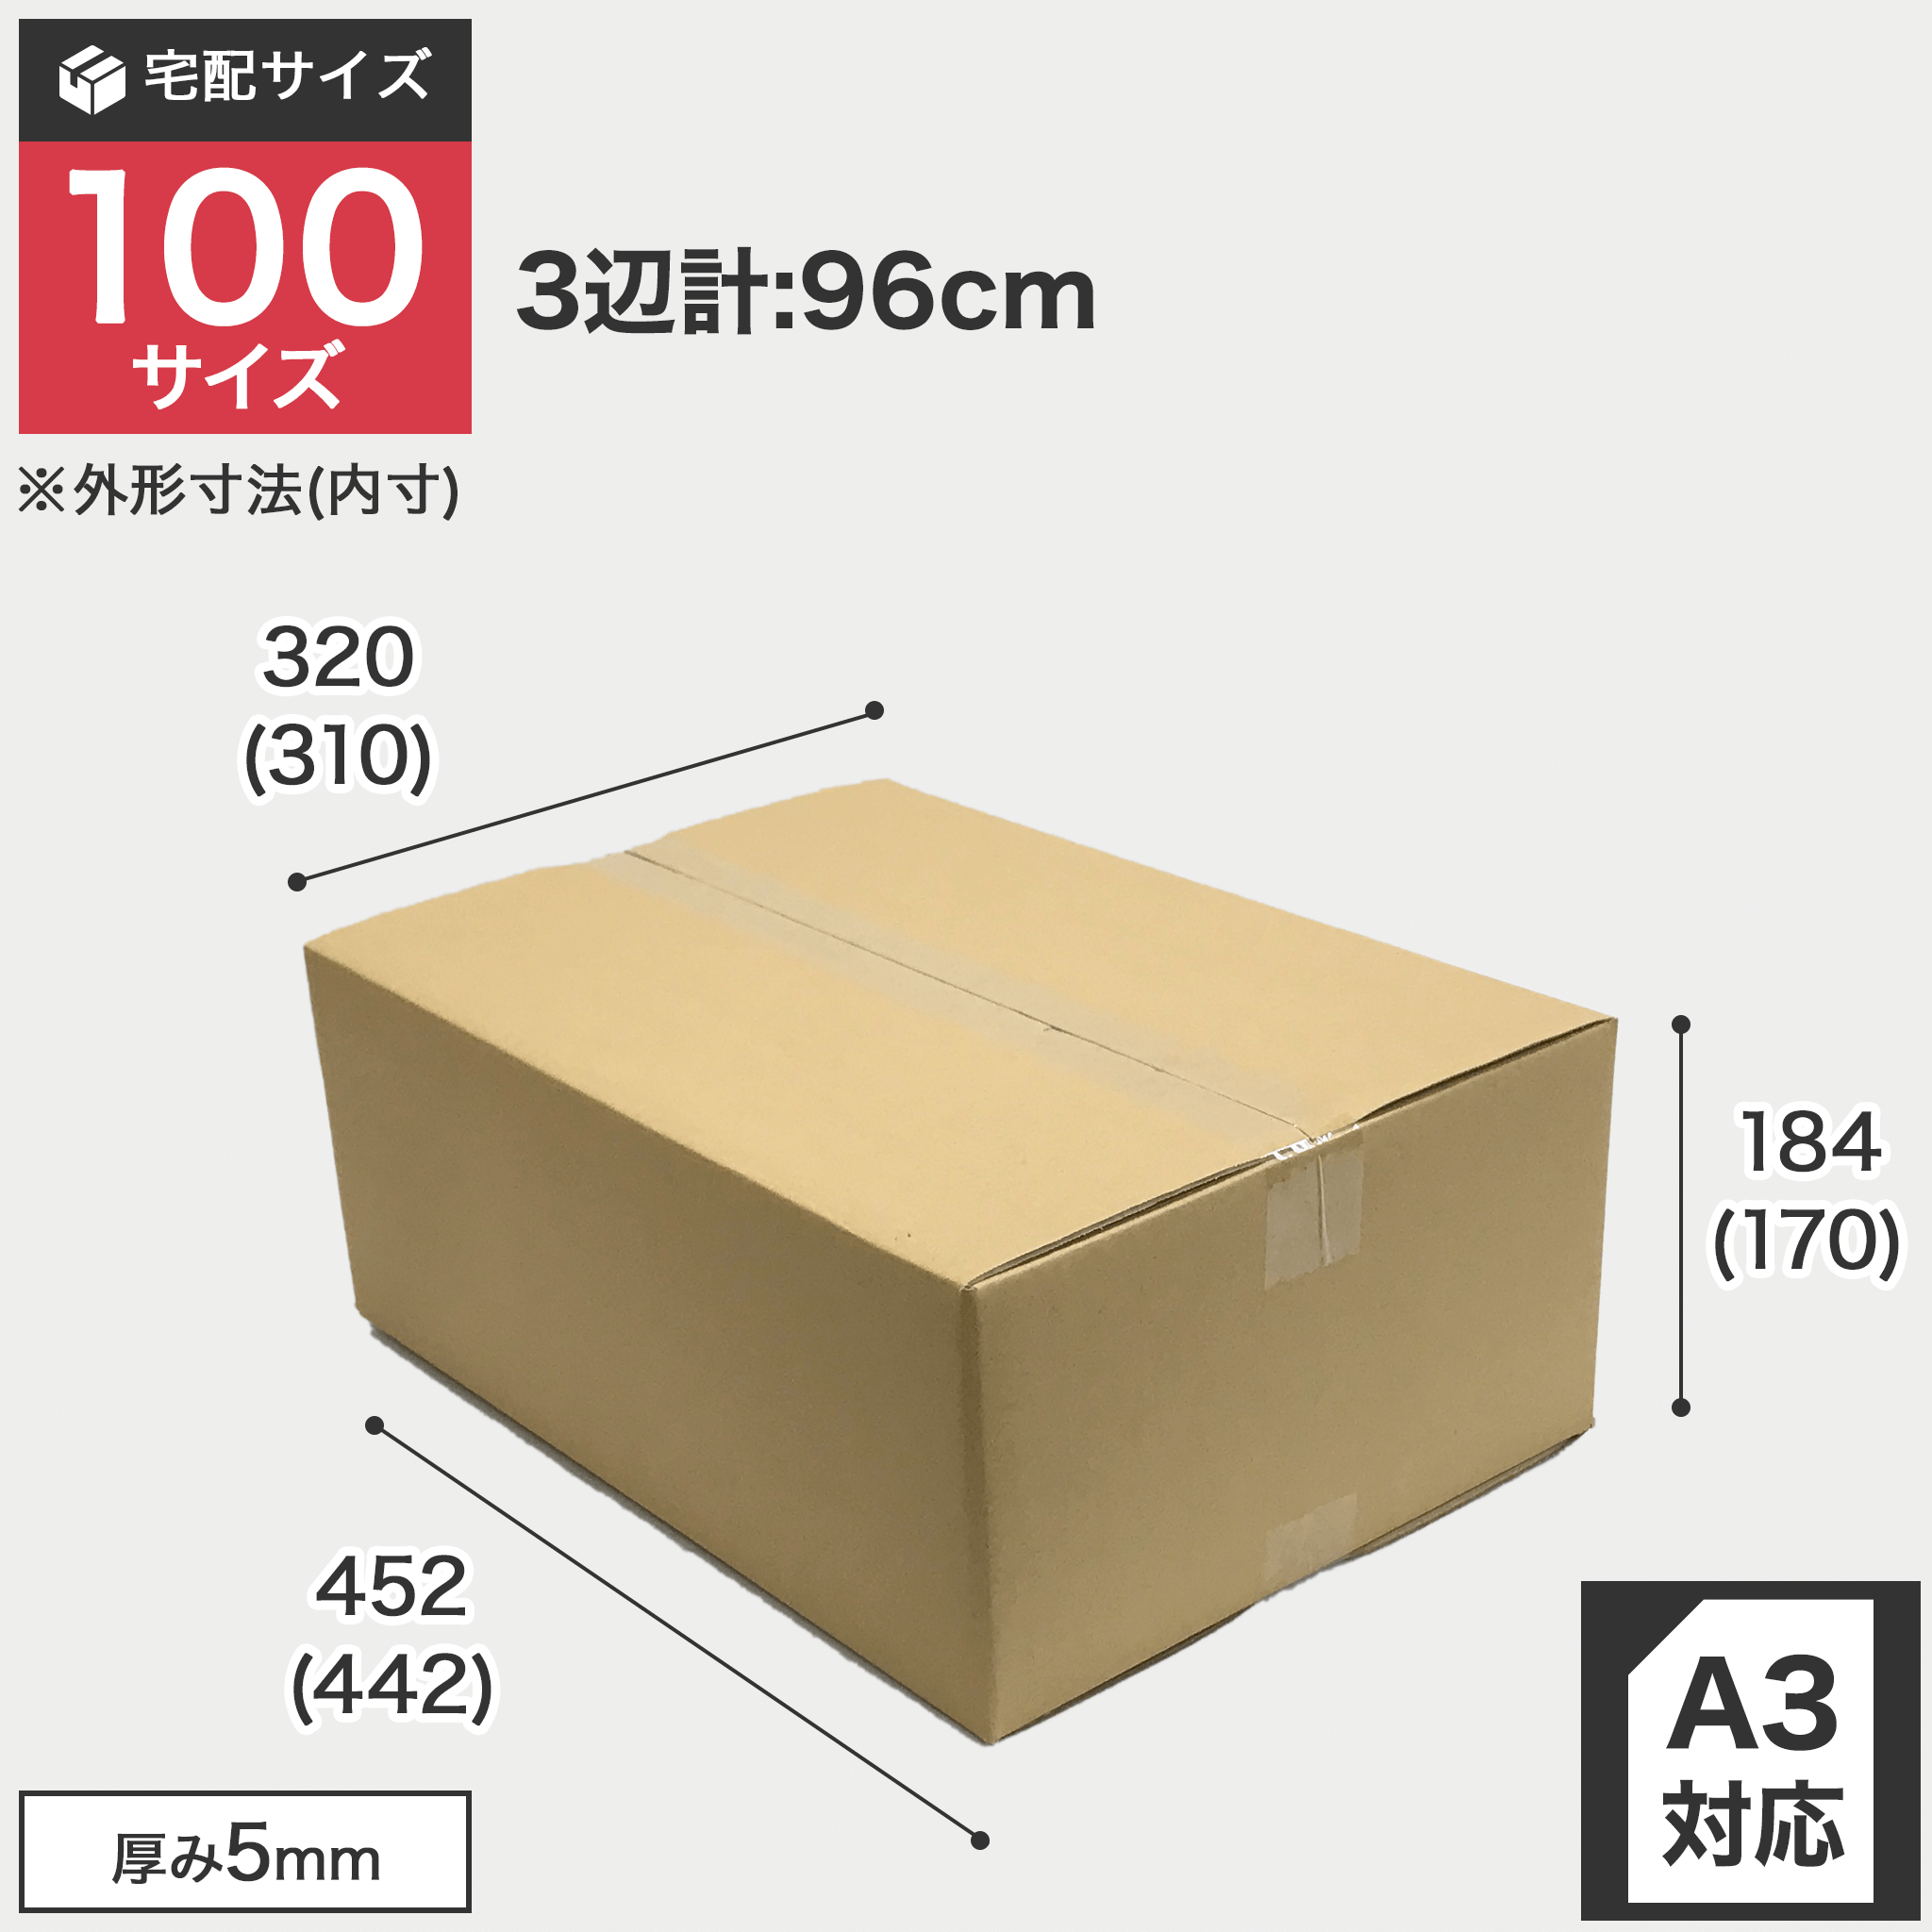 宅配100サイズのダンボール箱 3辺合計約96cm